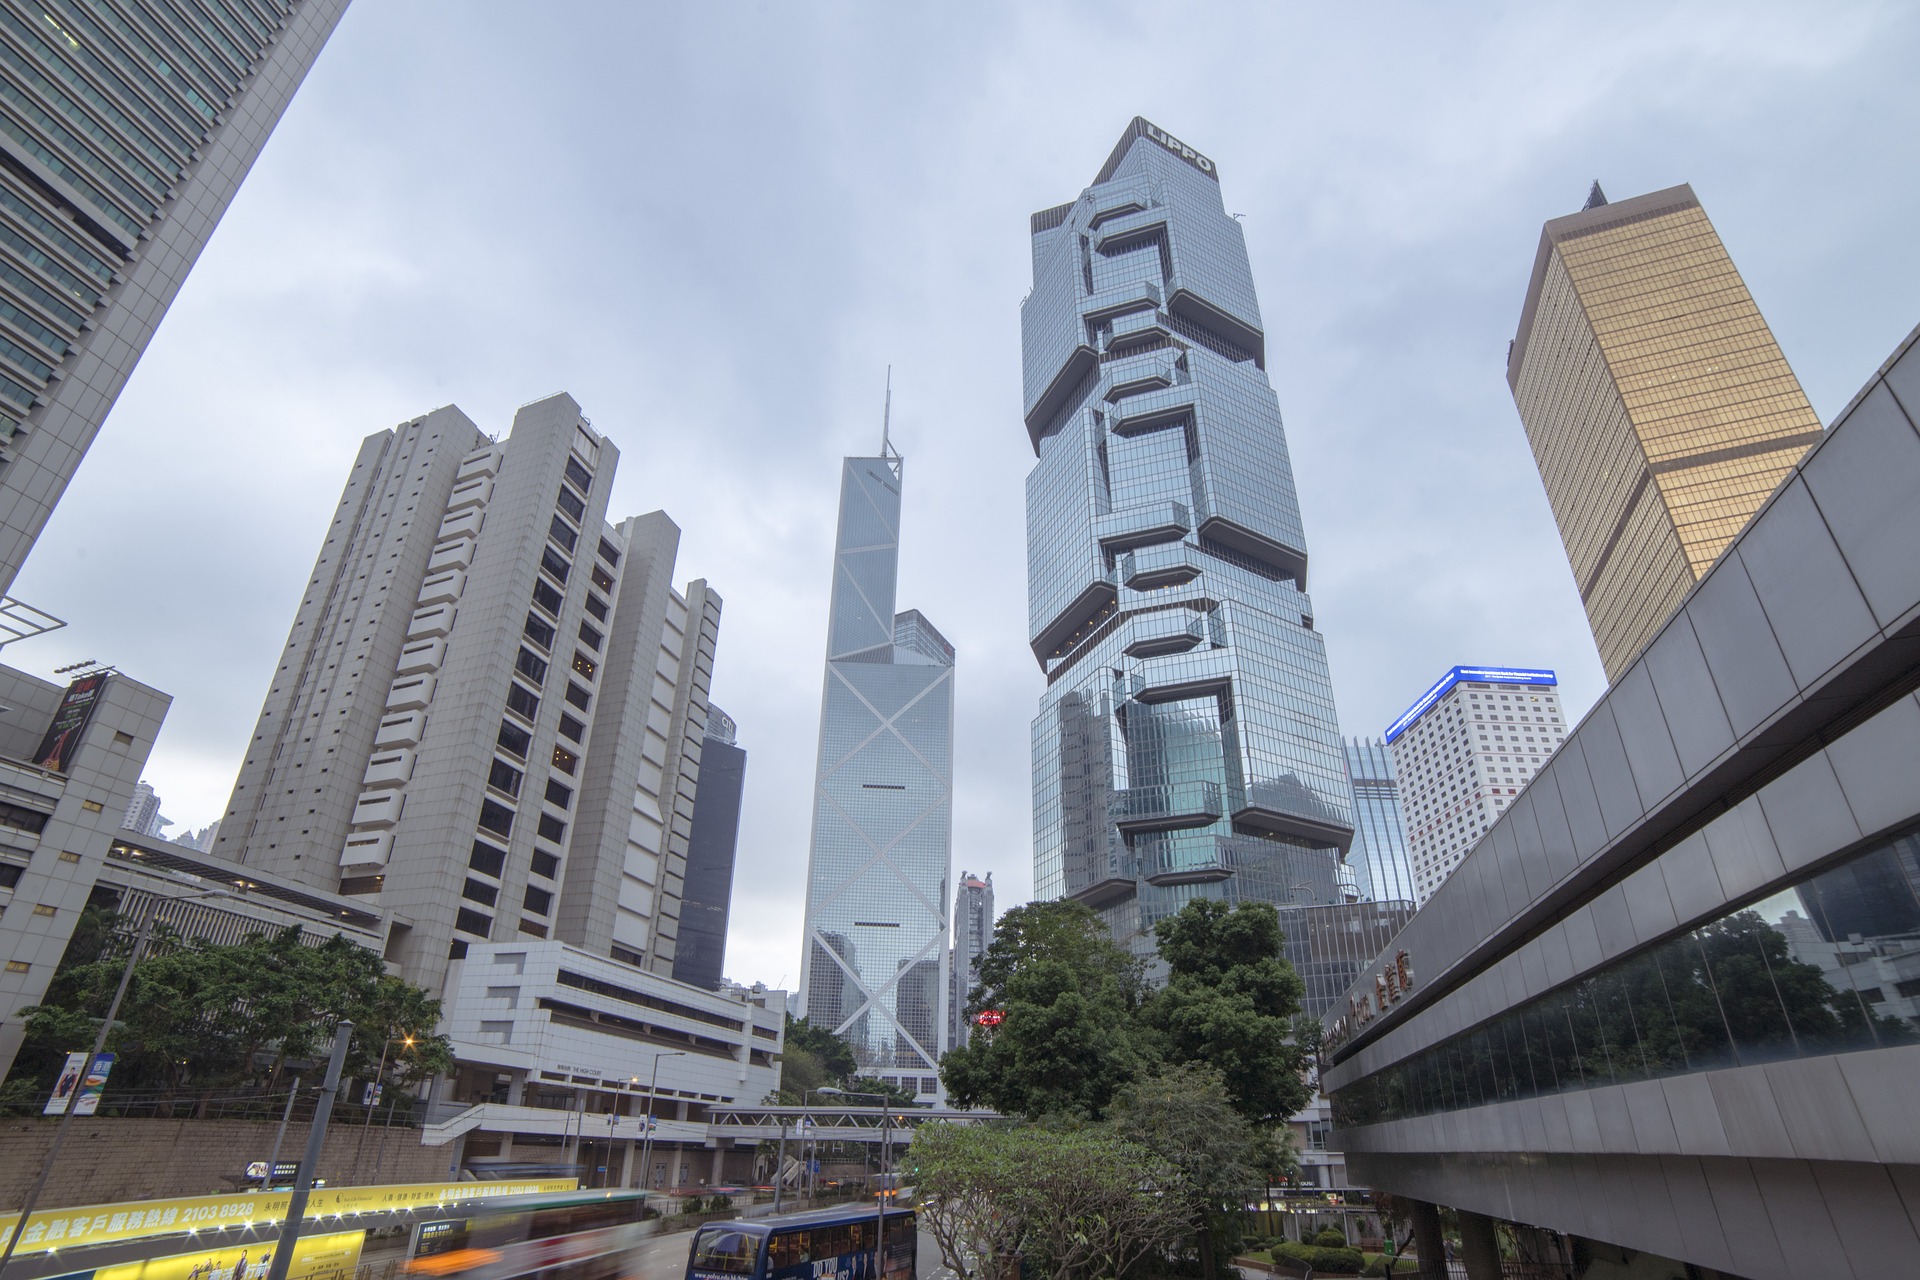 香港市景